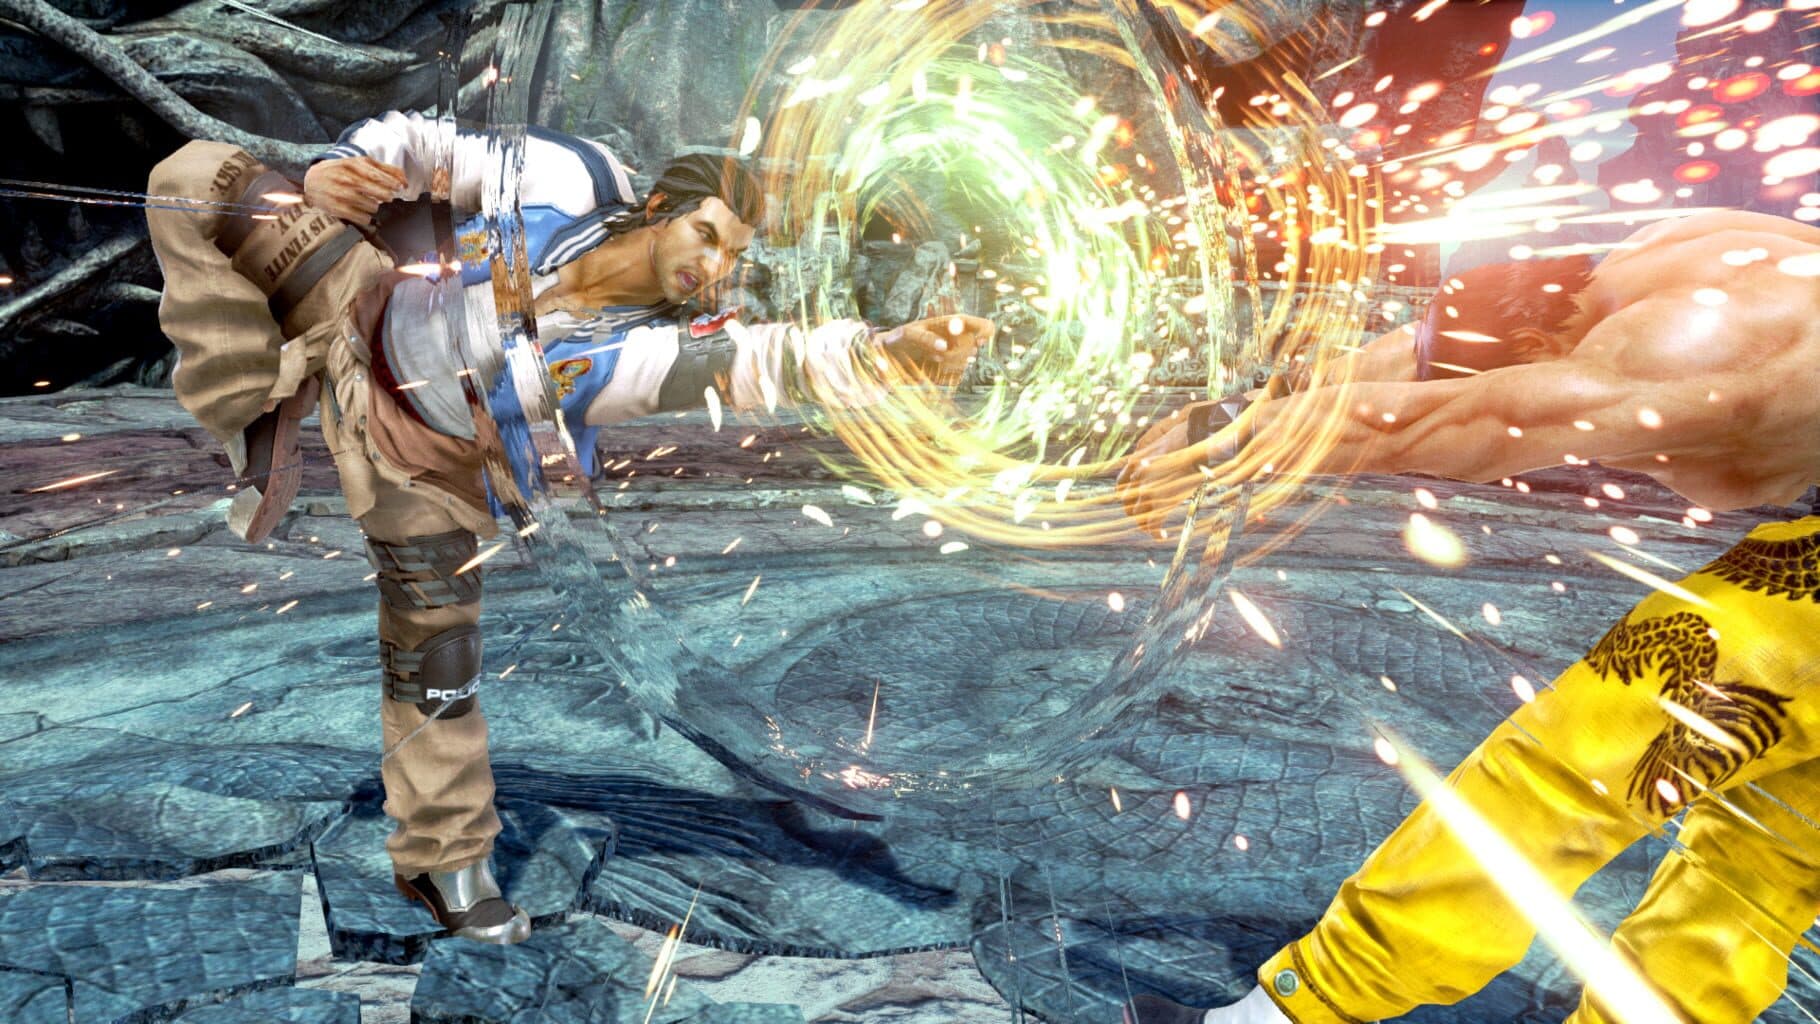 Tekken 7 Image